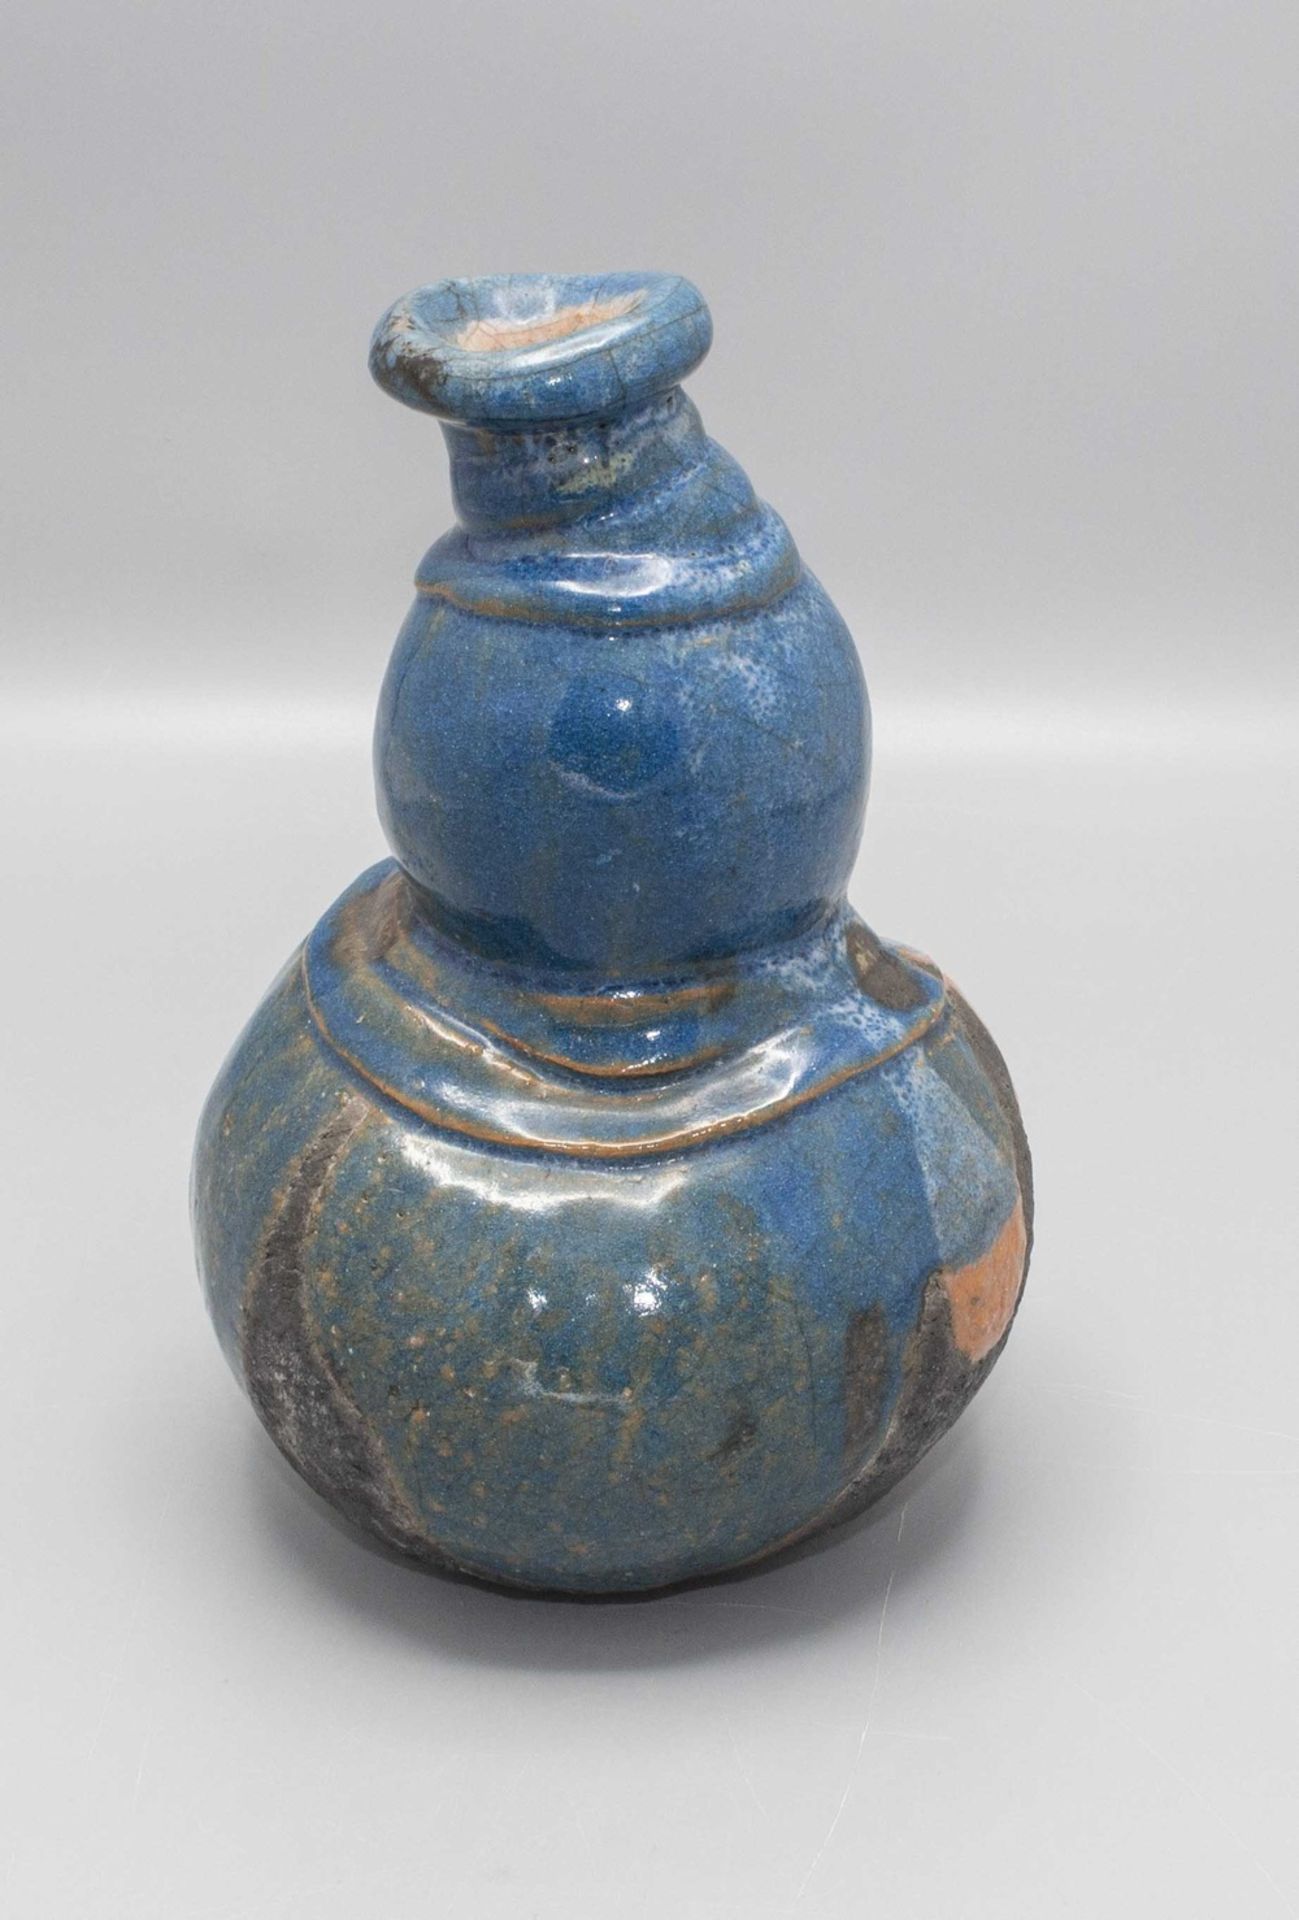 Vase Studiokeramik / A studio ceramic vase, 20. Jh. - Bild 4 aus 6